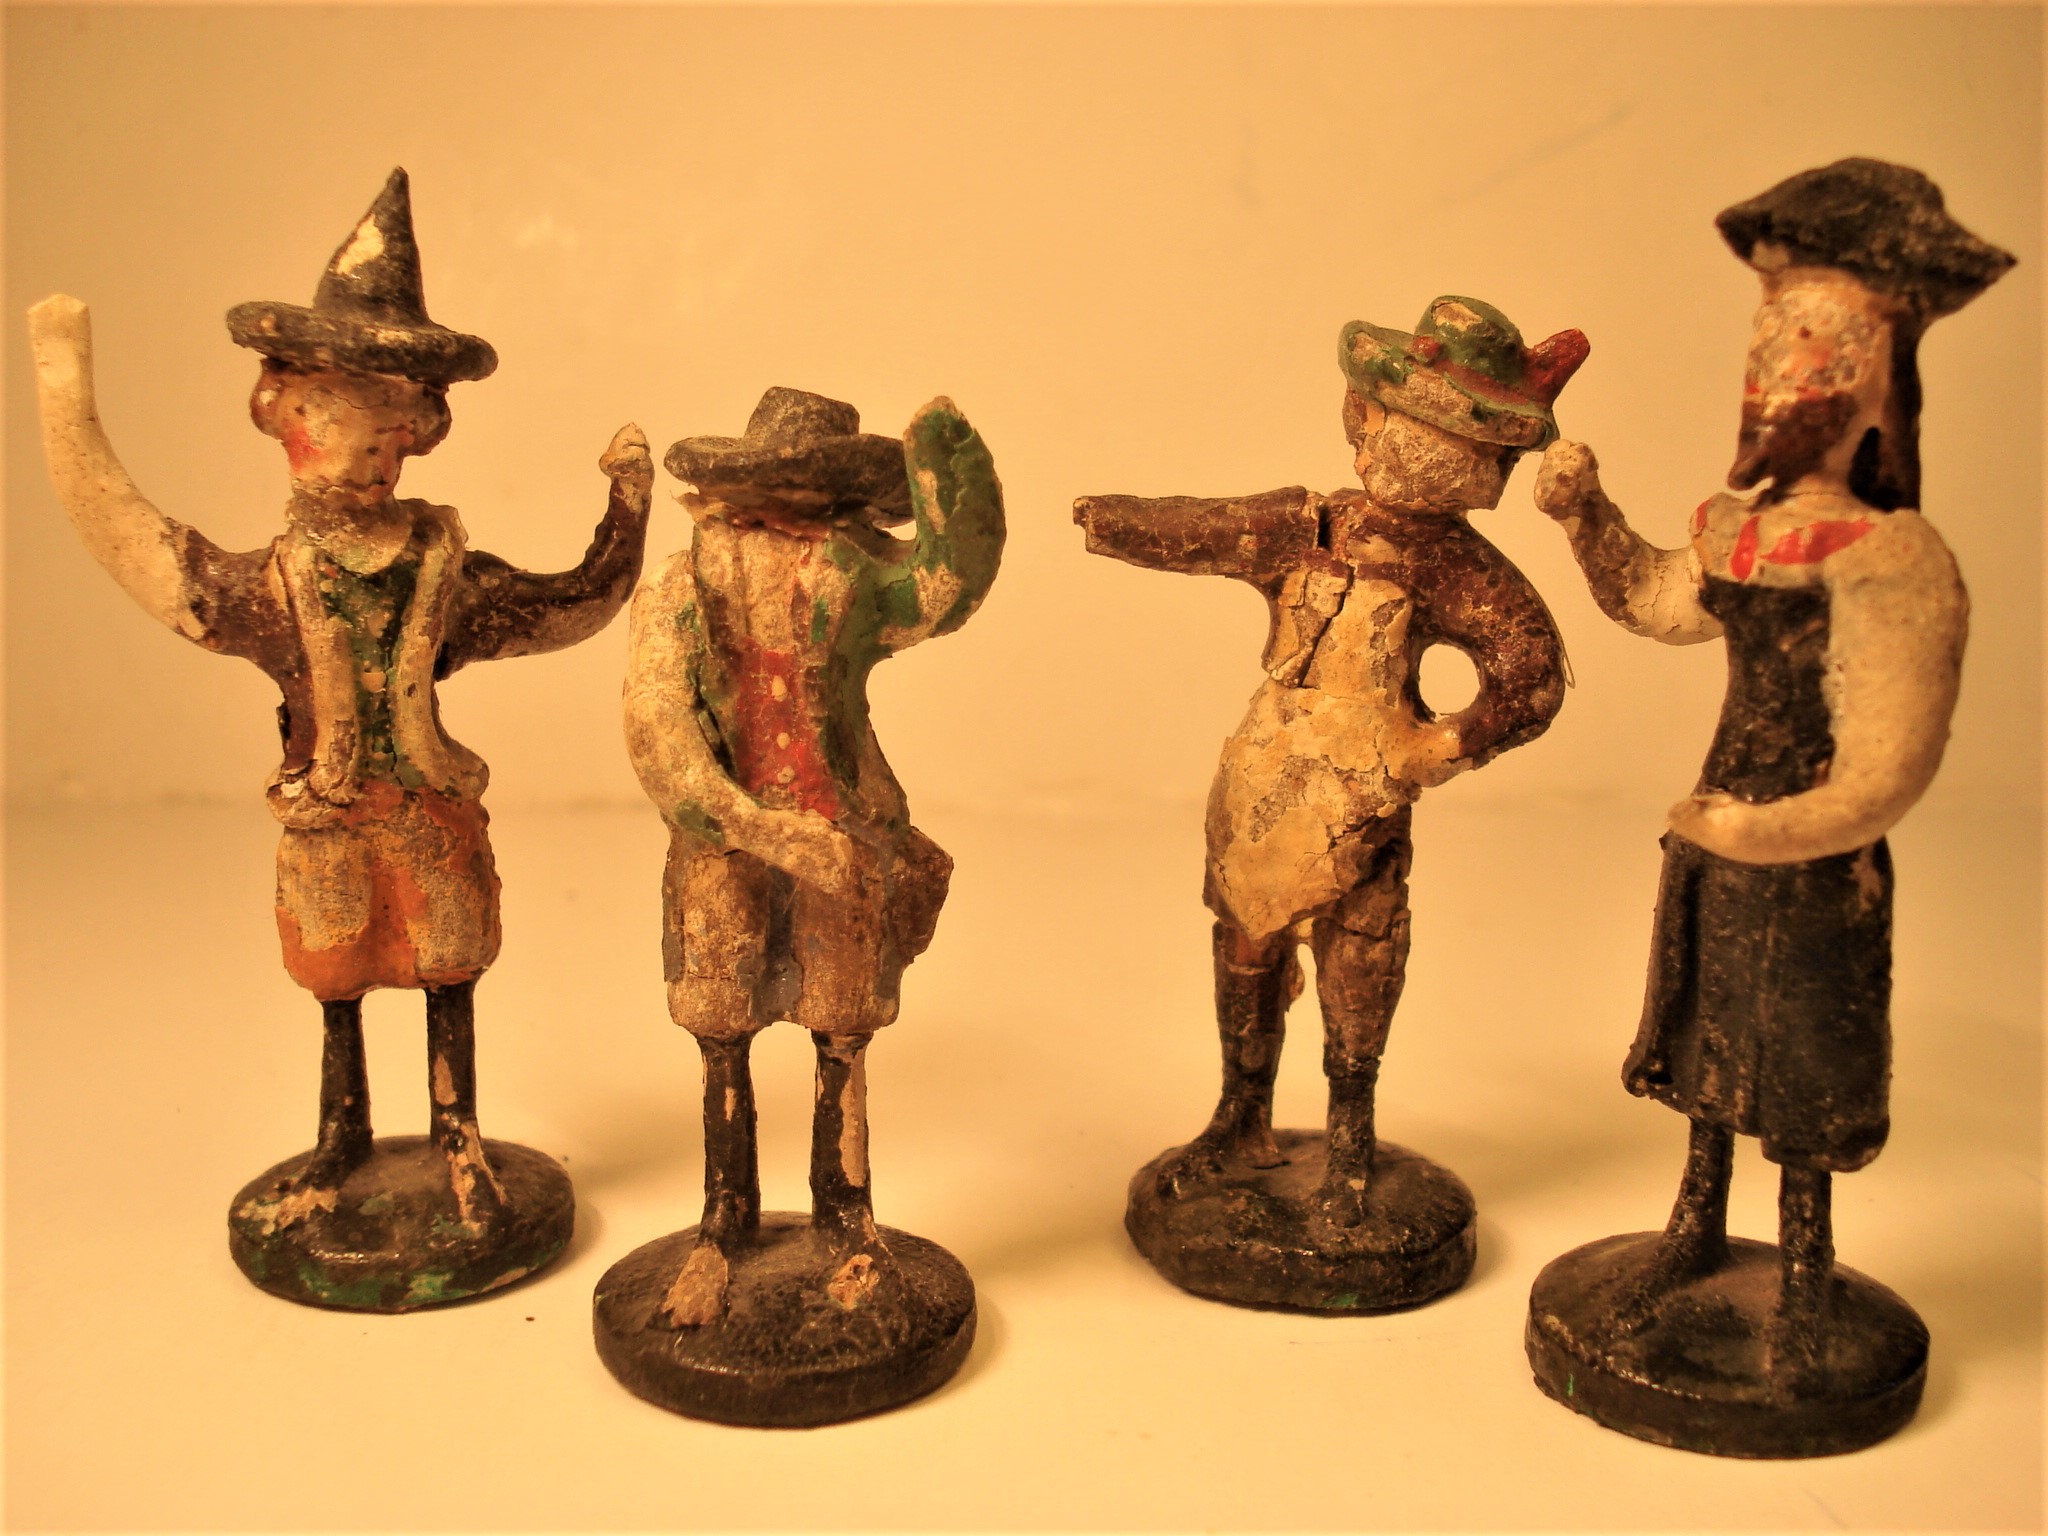 2a Krippenfiguren, Hersteller_ unbekannt, Sehma, Mitte 19. Jhd. fehlende Teile wurden nach originalen Vorbildern ergänzt, farbliche Überarbeitung_